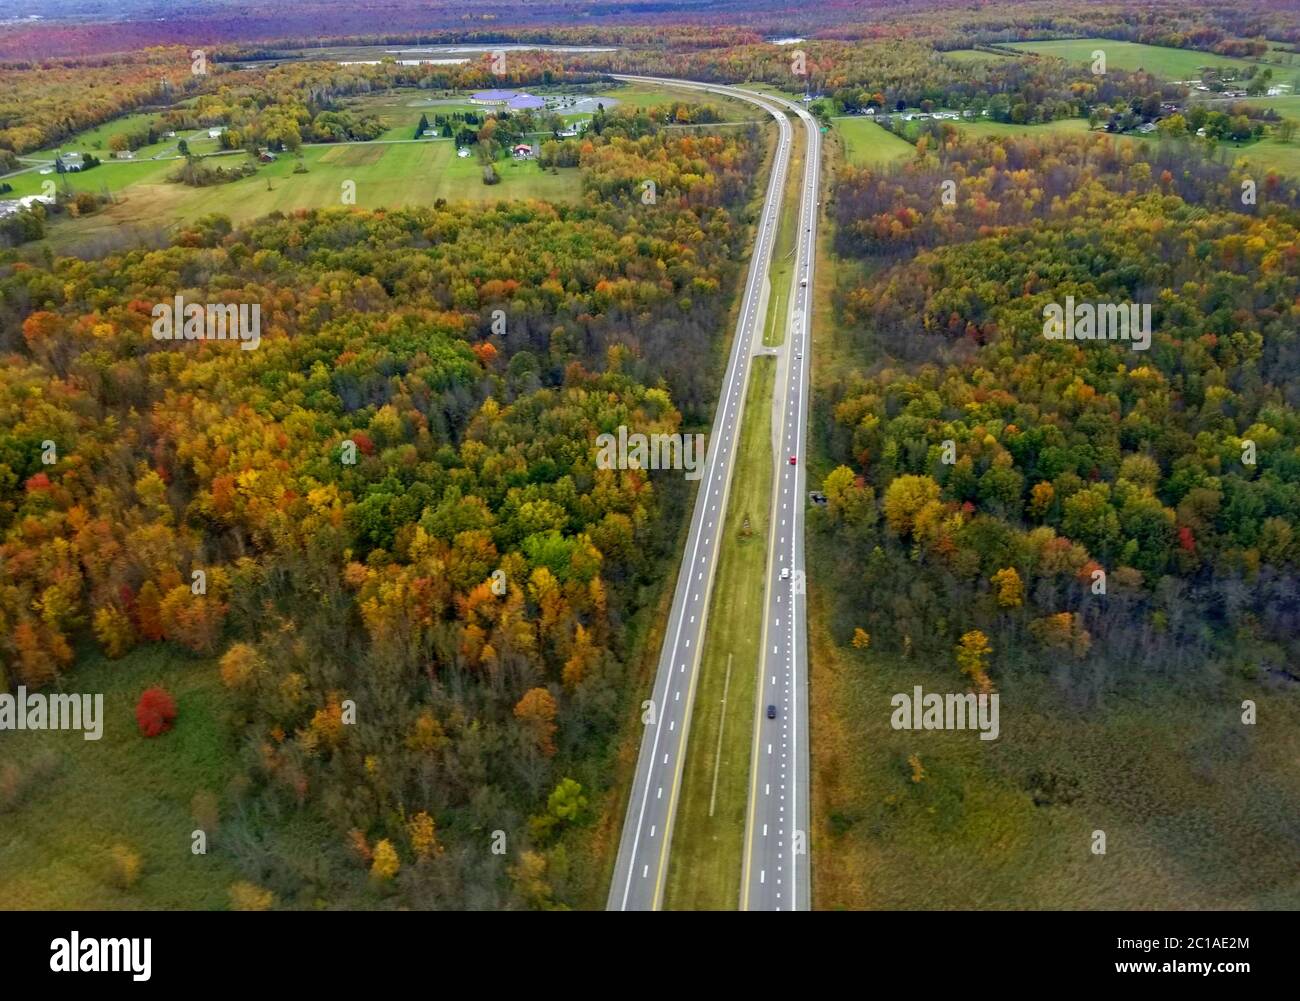 La vue aérienne de l'autoroute avec le feuillage d'automne magnifique près de Syracuse, New York, États-Unis Banque D'Images